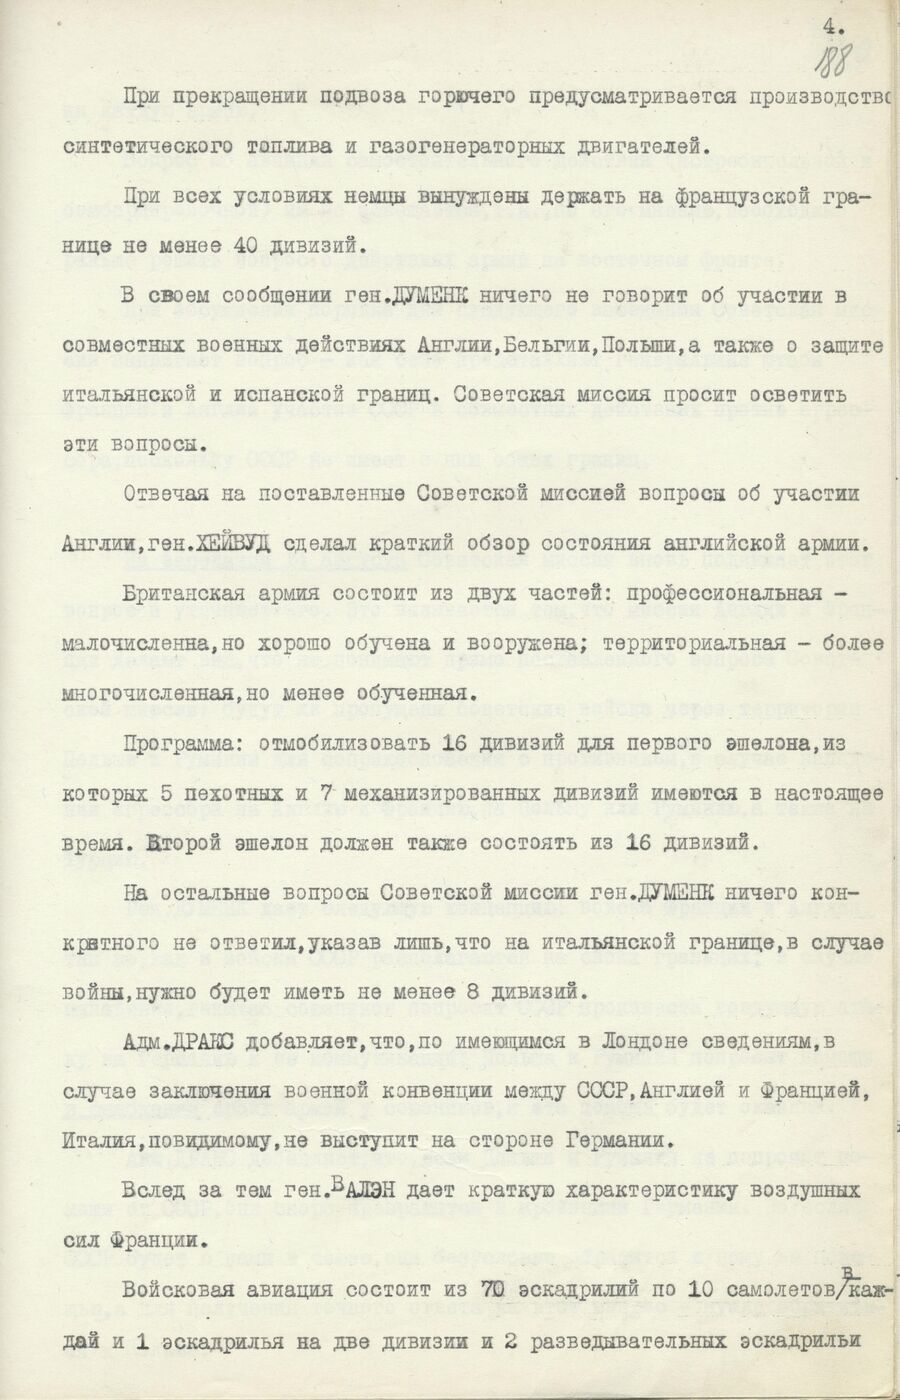 1939.08.26 Отчет о работе совещания. Лист 4